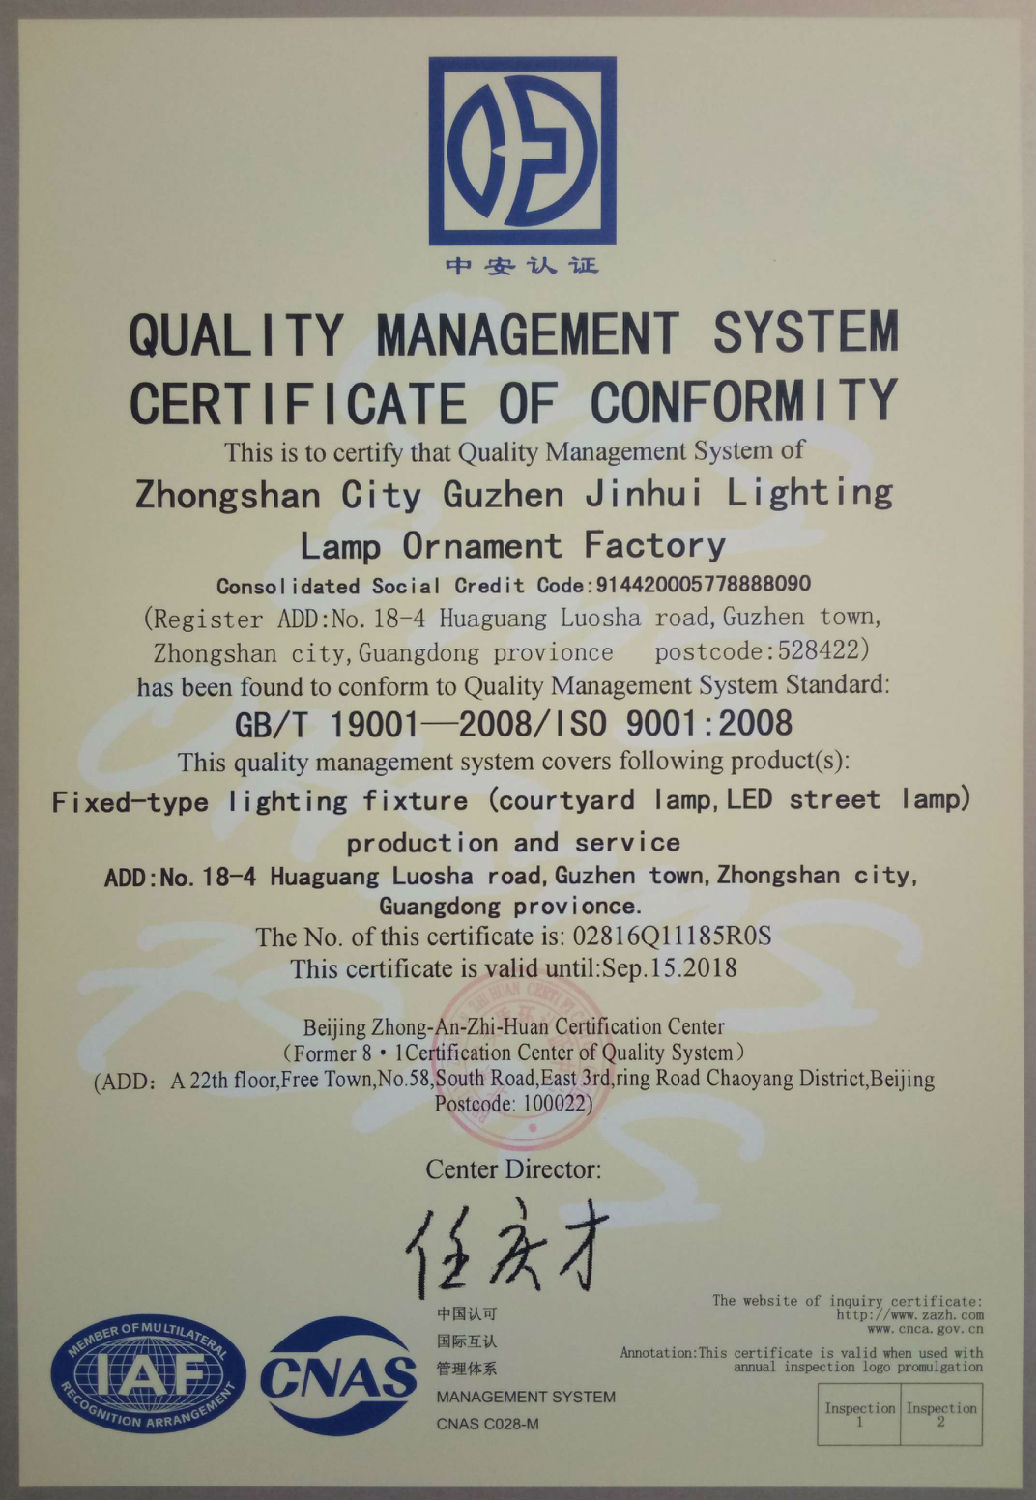 劲辉太阳能,ISO认证,质量管理体系认证